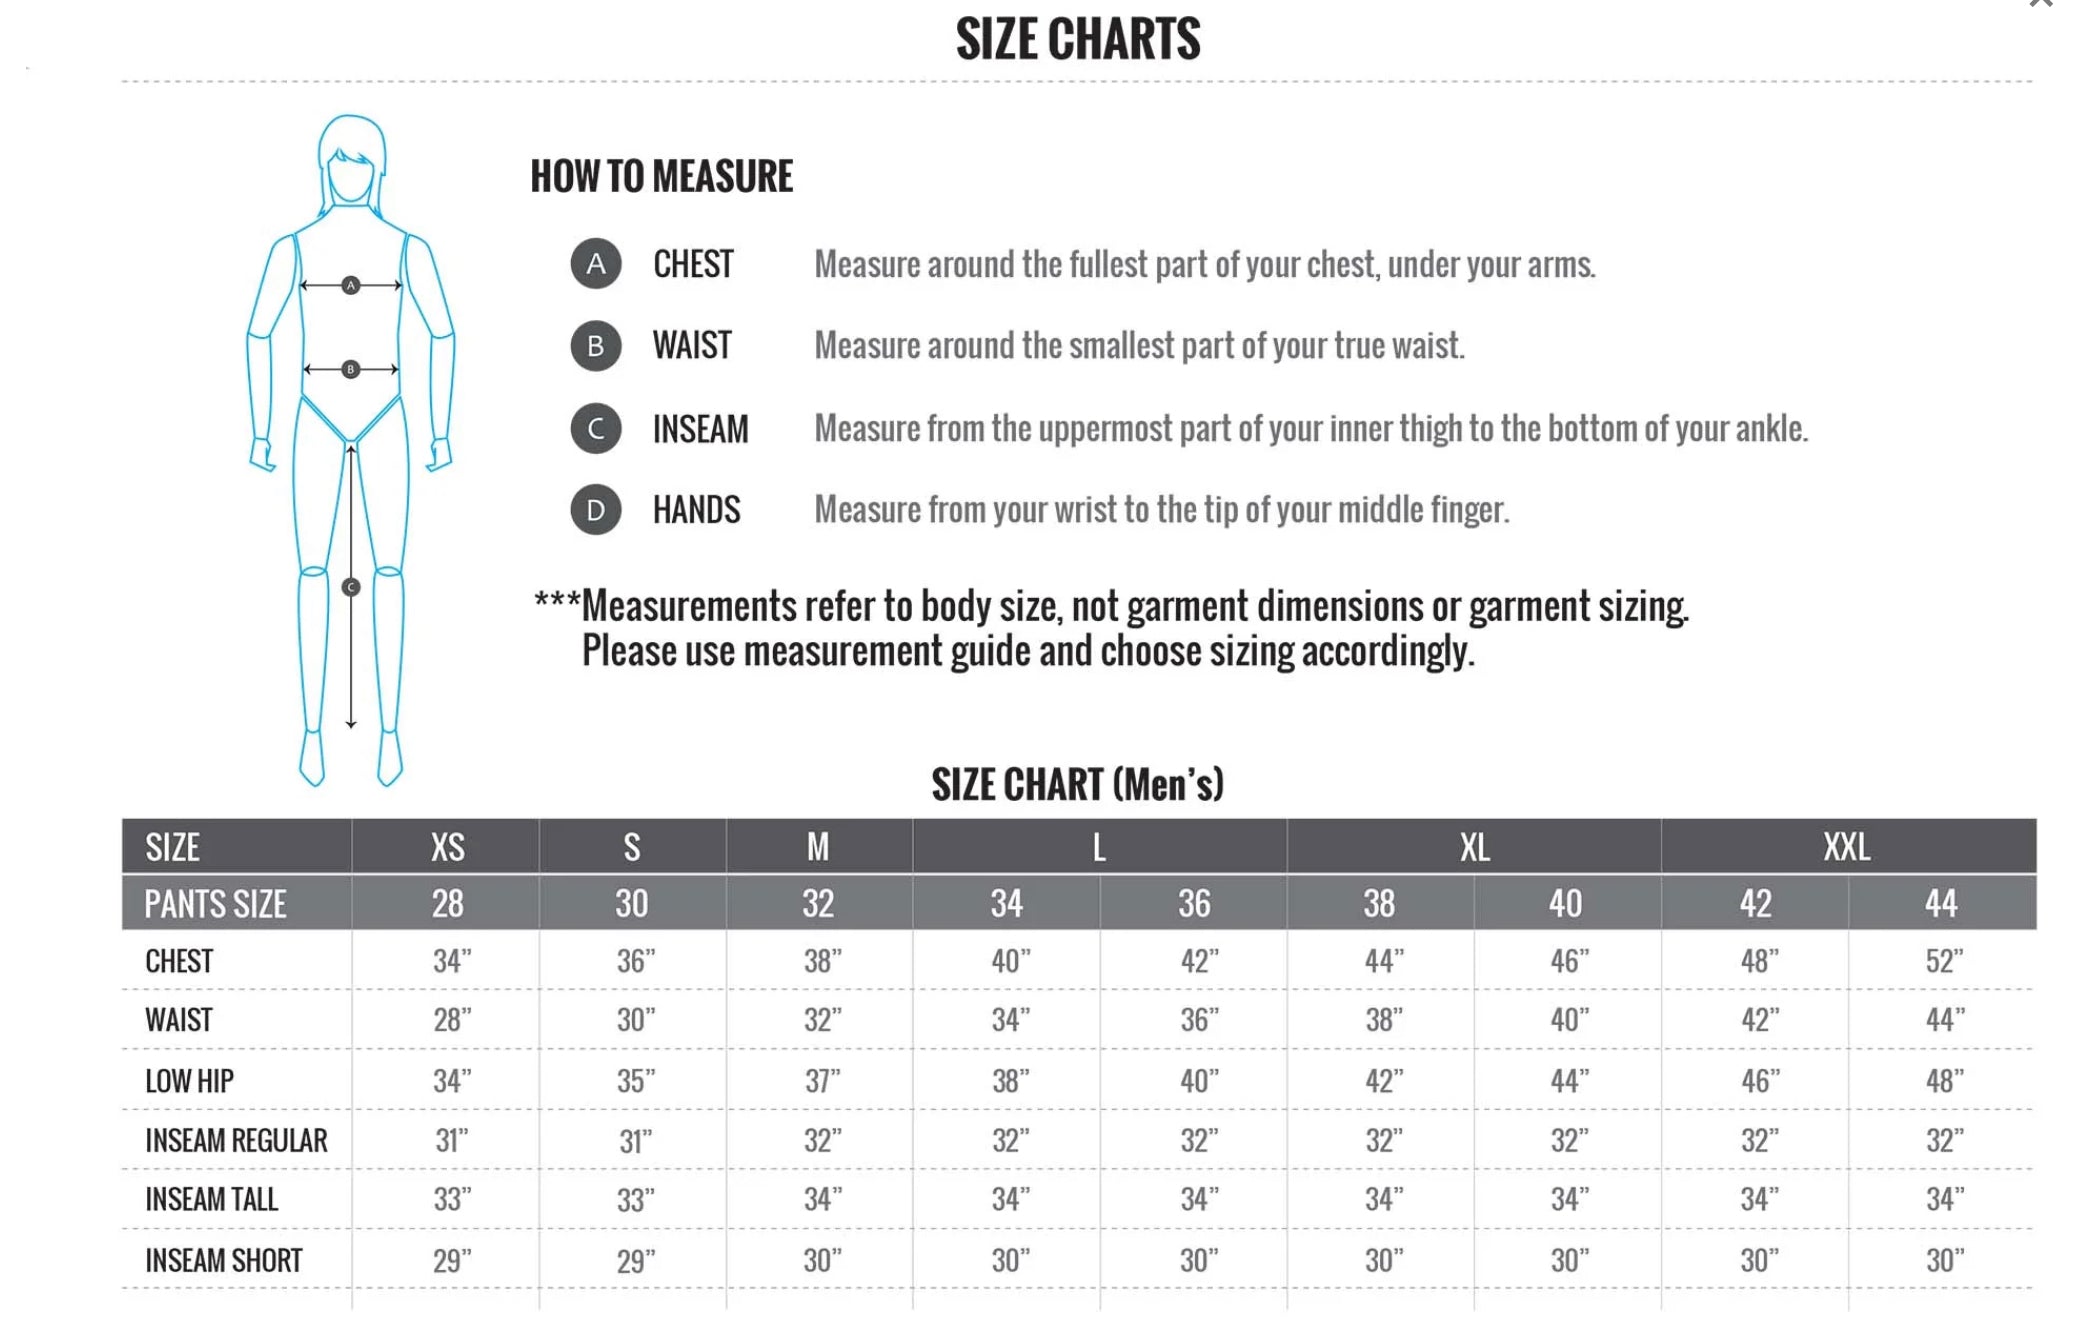 Flylow Gear Men’s Size Chart